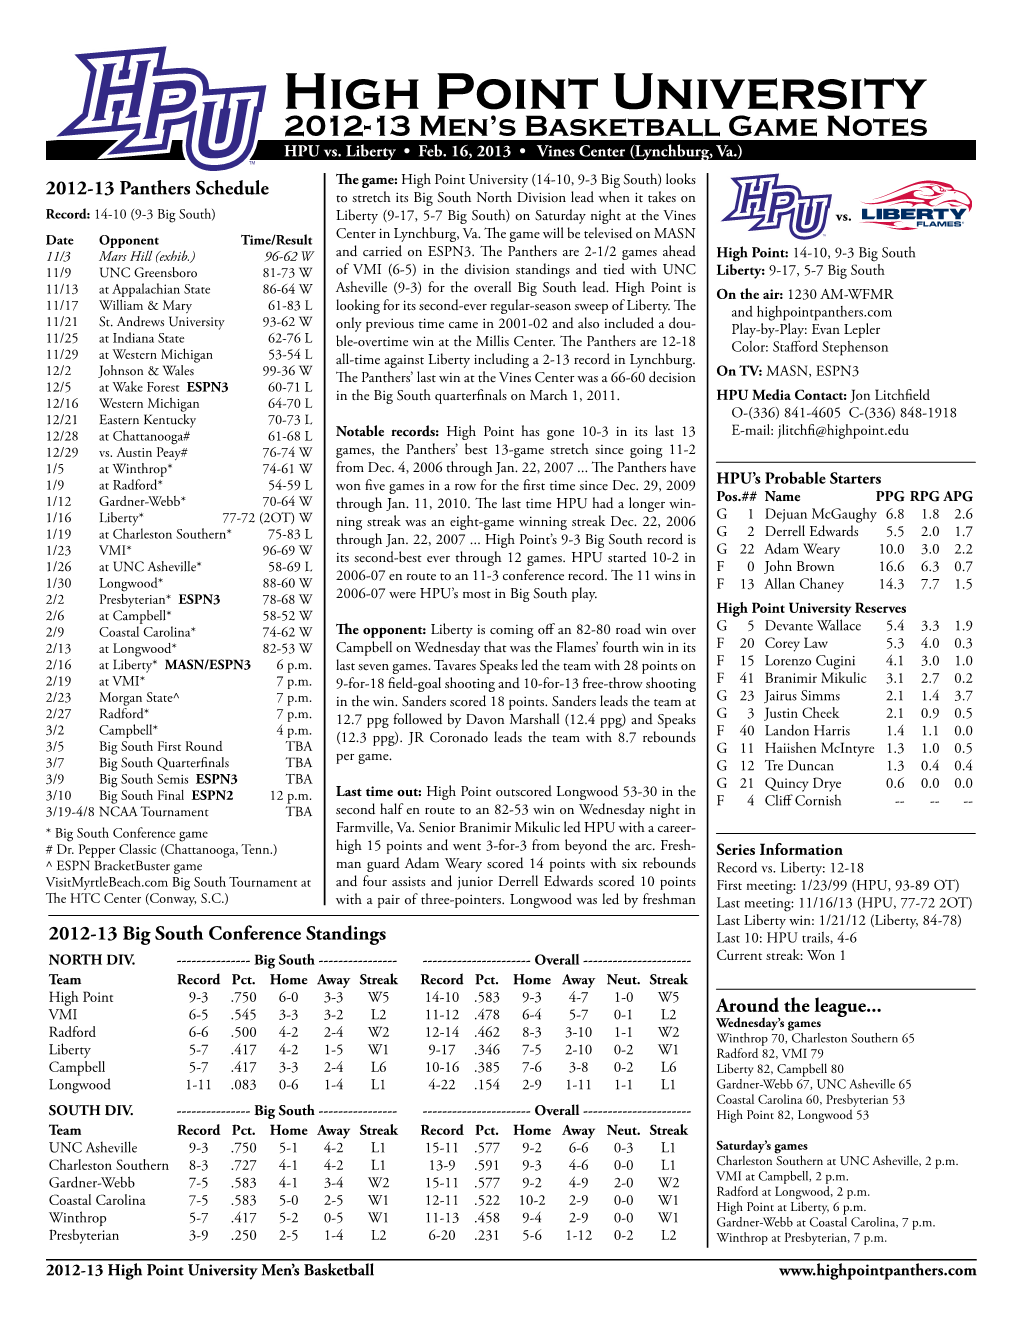 2012-13 High Point University Men's Basketball Roster